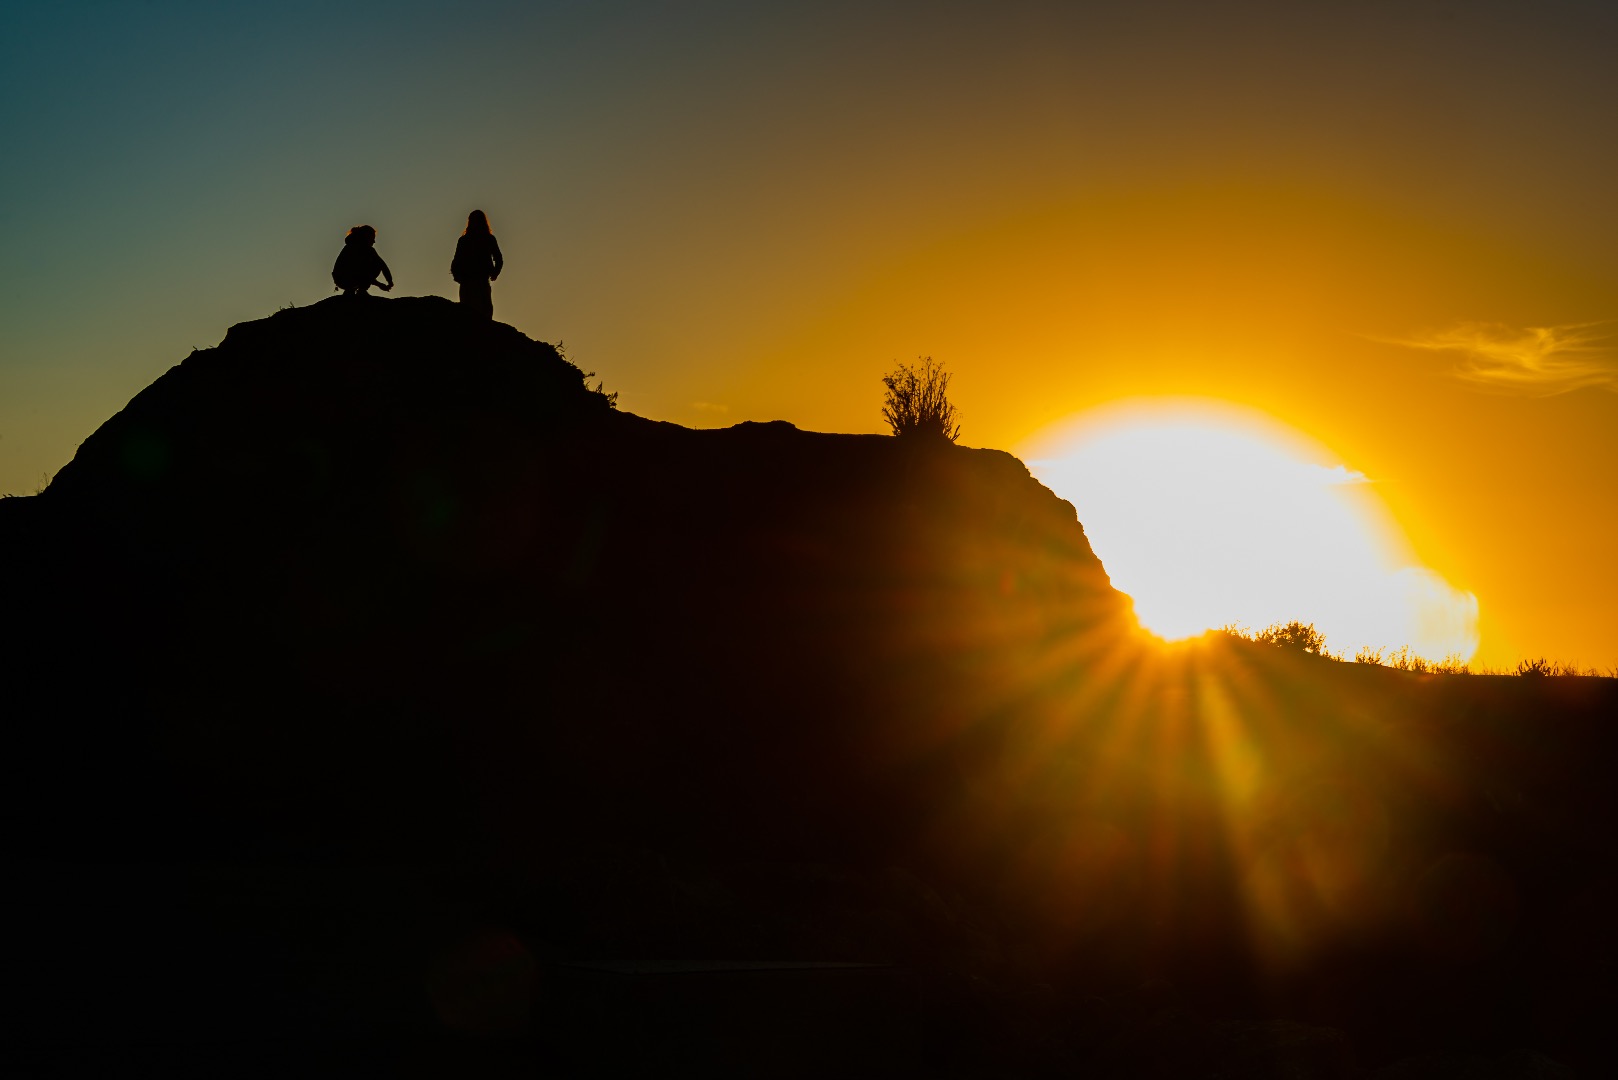 People in silhouette at sunrise-5.jpg